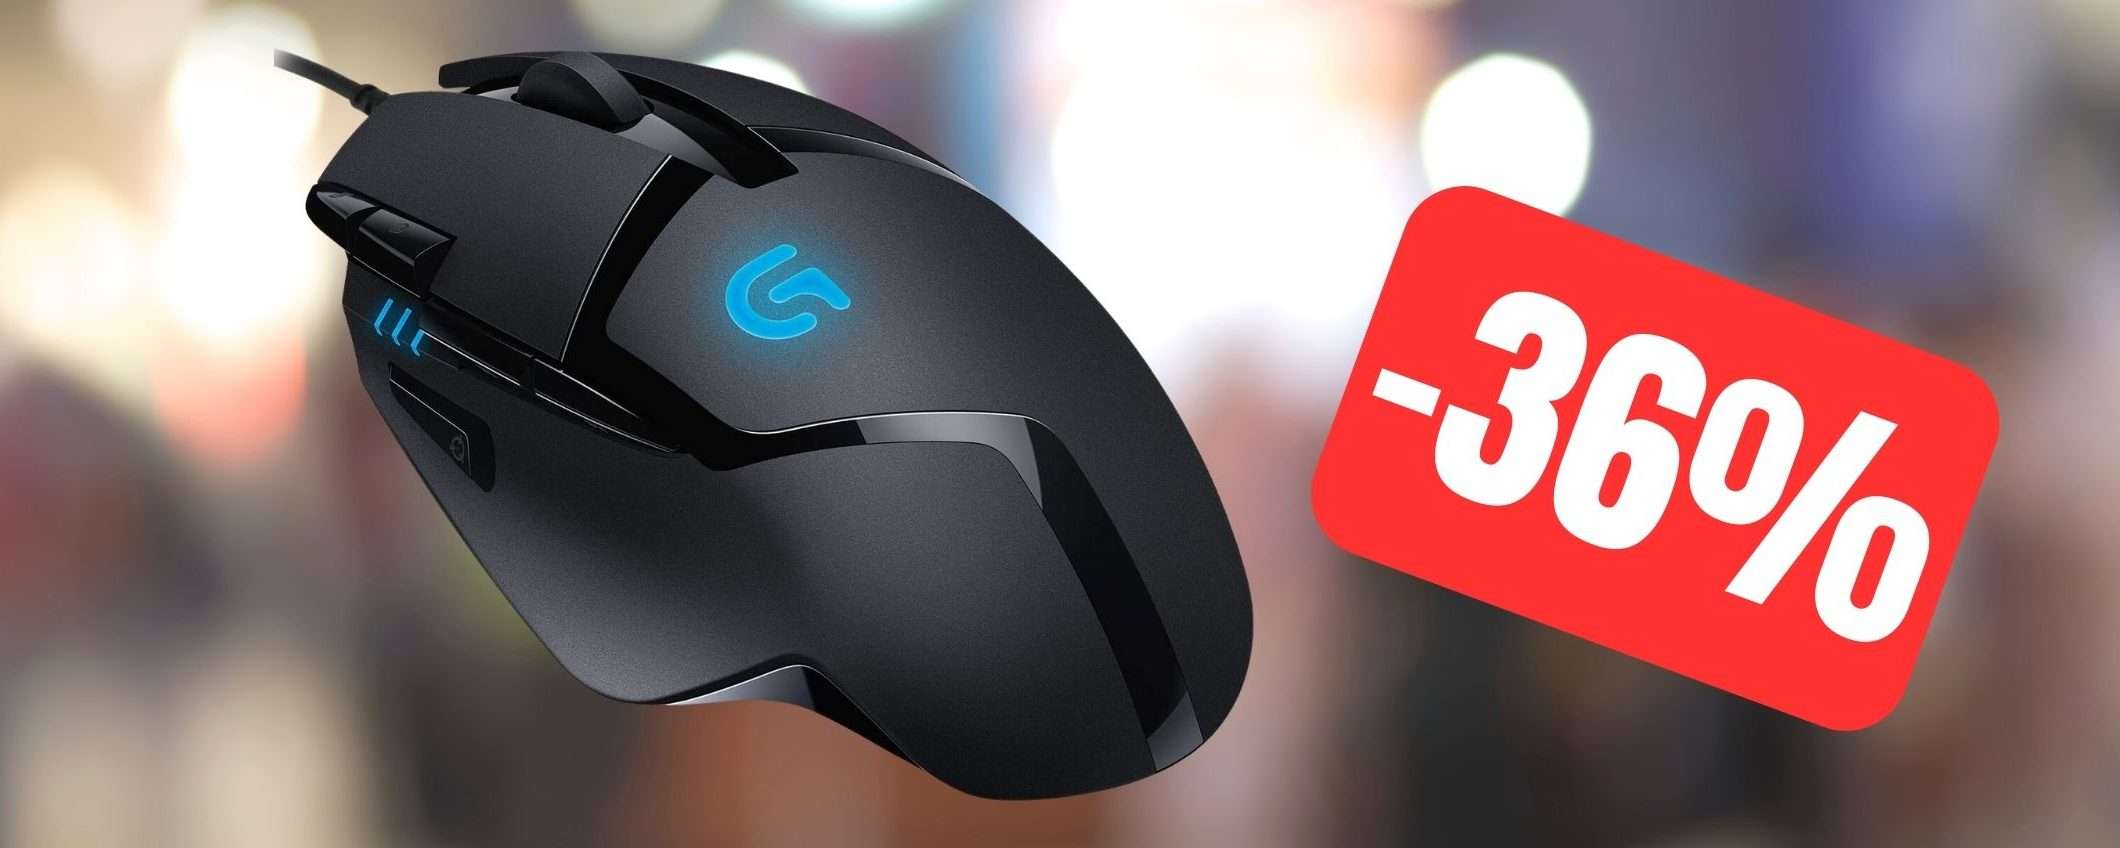 Logitech G402: fantastico mouse da gaming in SUPER SCONTO (-36%)